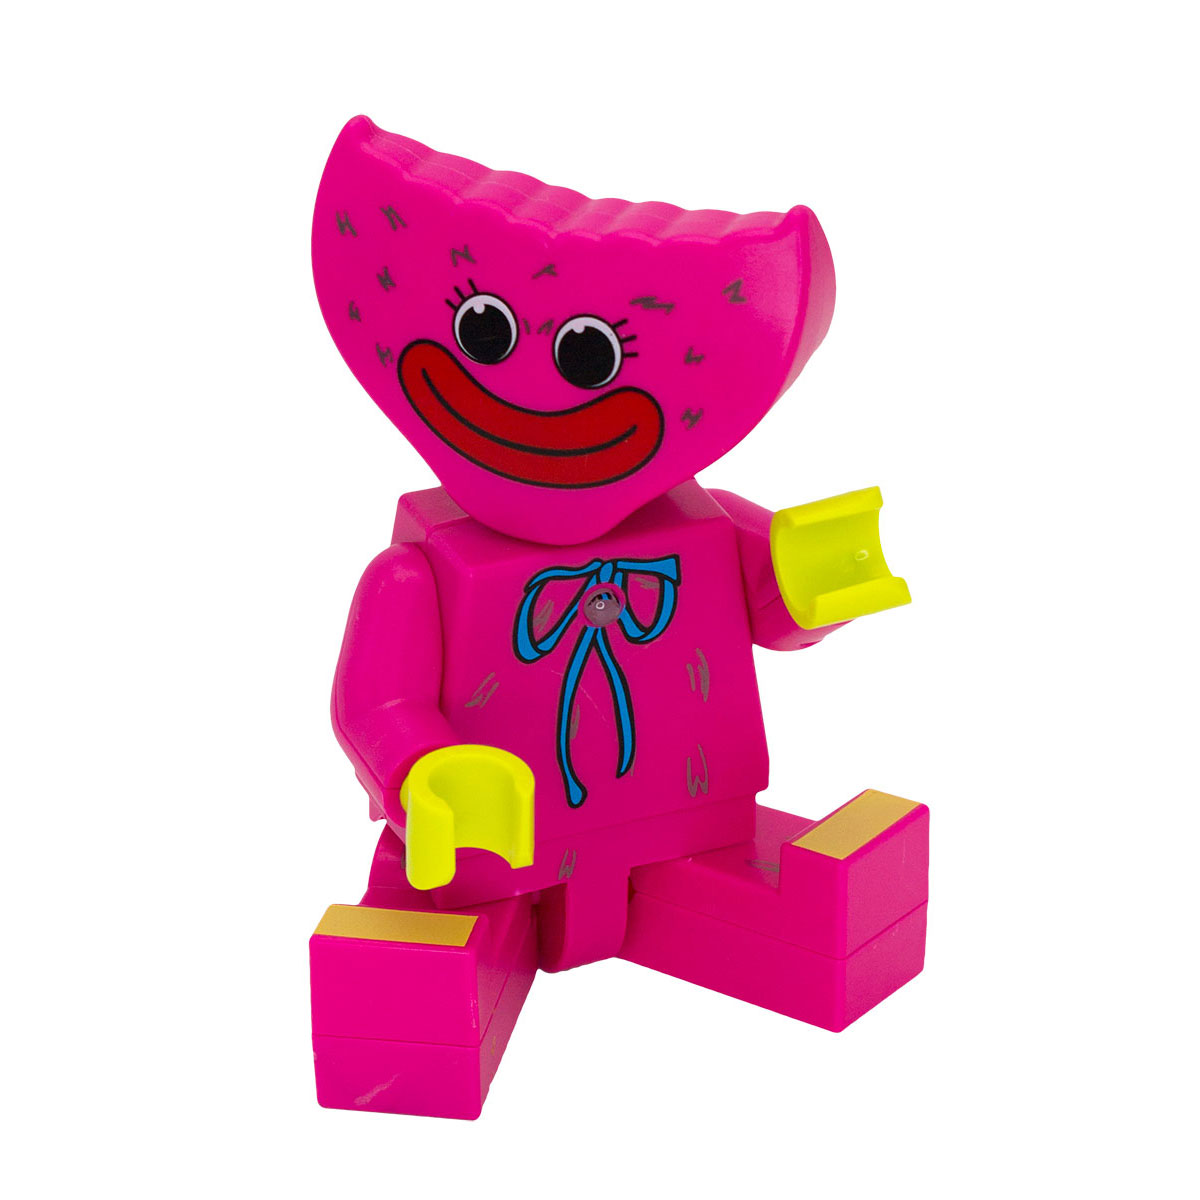 Фигурка Михи-Михи Кисси Мисси с подсветкой розовая 18 см - фото 5